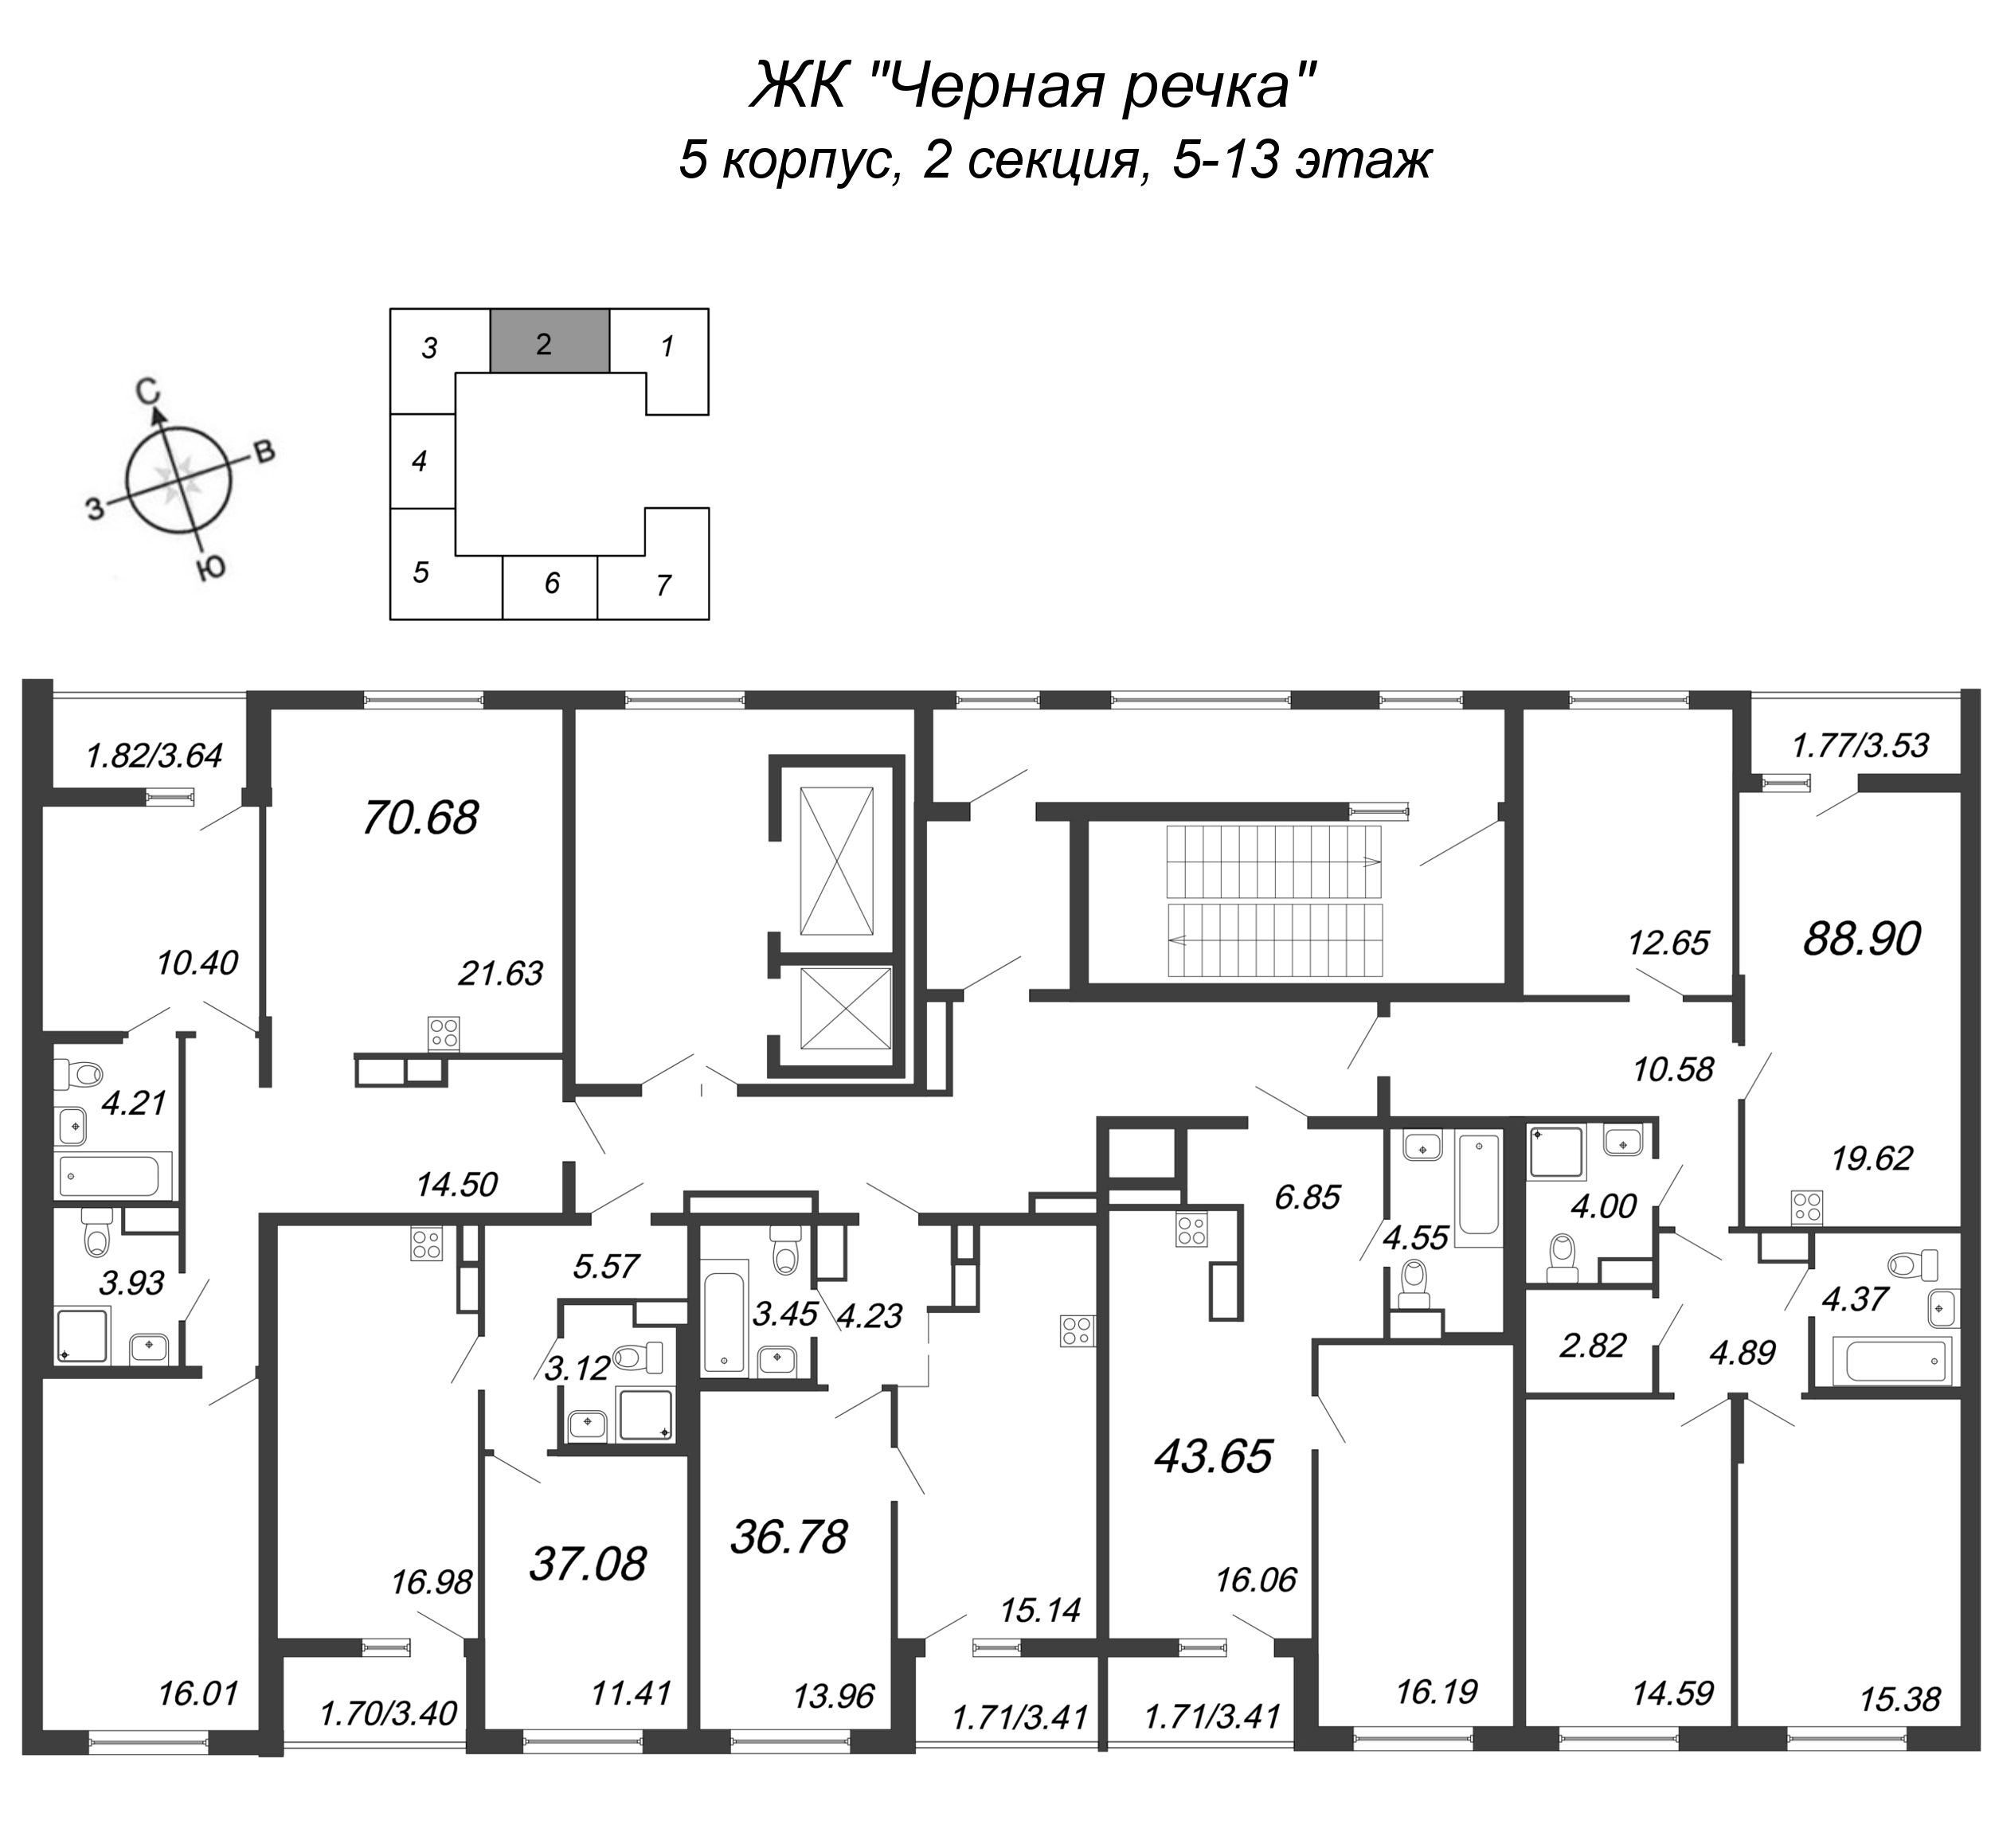 2-комнатная (Евро) квартира, 37.08 м² в ЖК "Чёрная речка" - планировка этажа